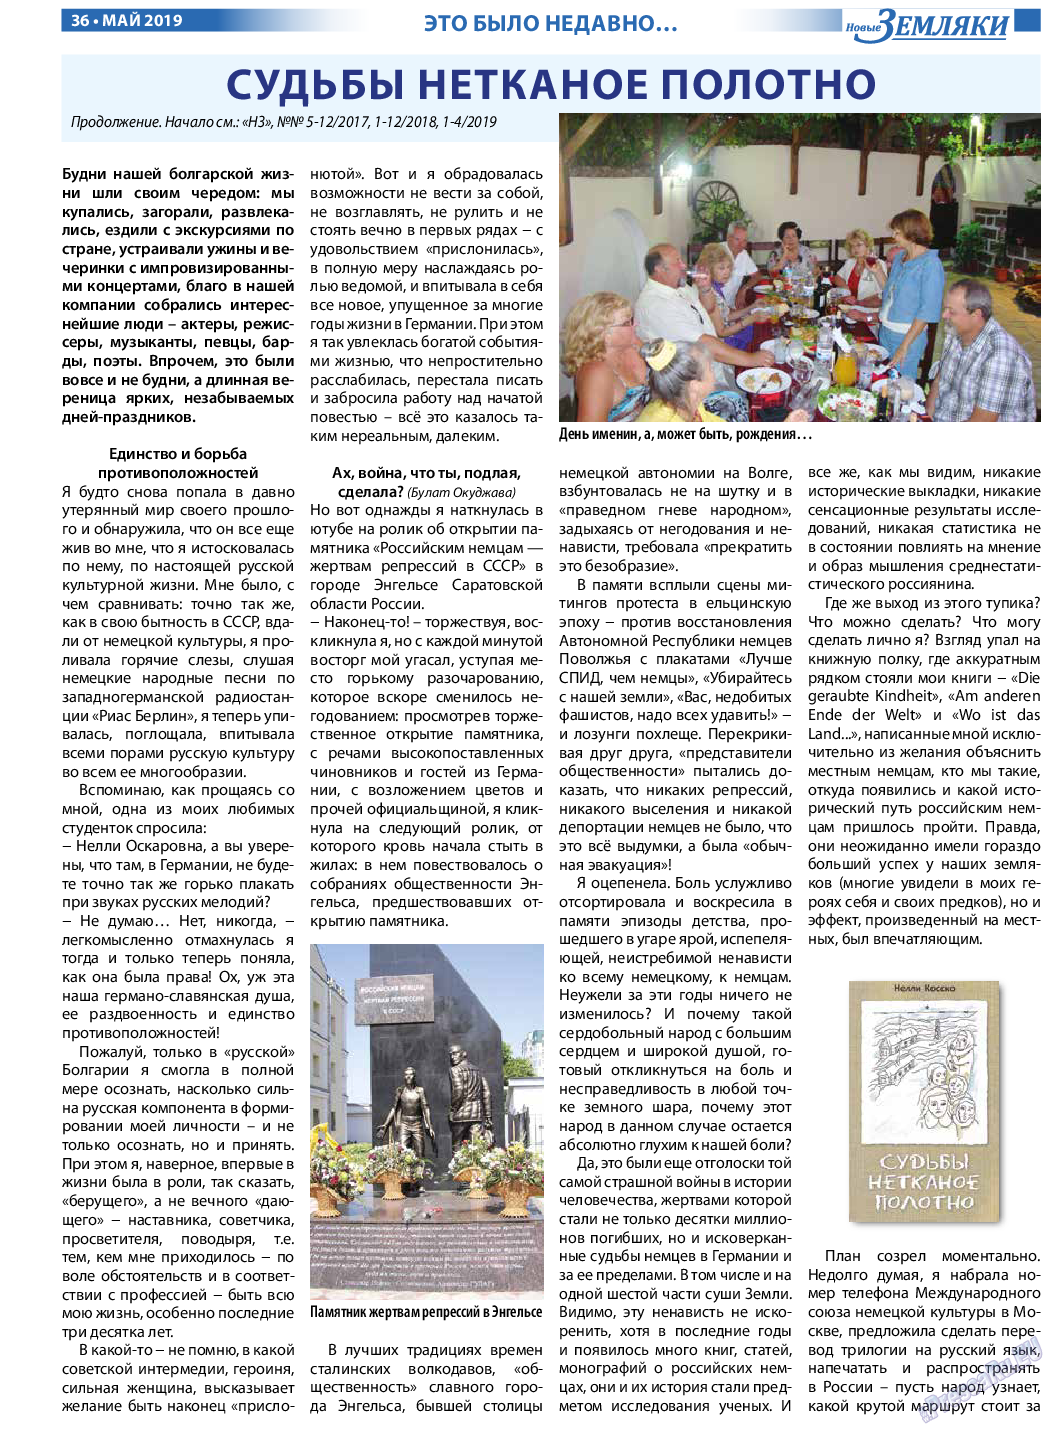 Новые Земляки, газета. 2019 №5 стр.36